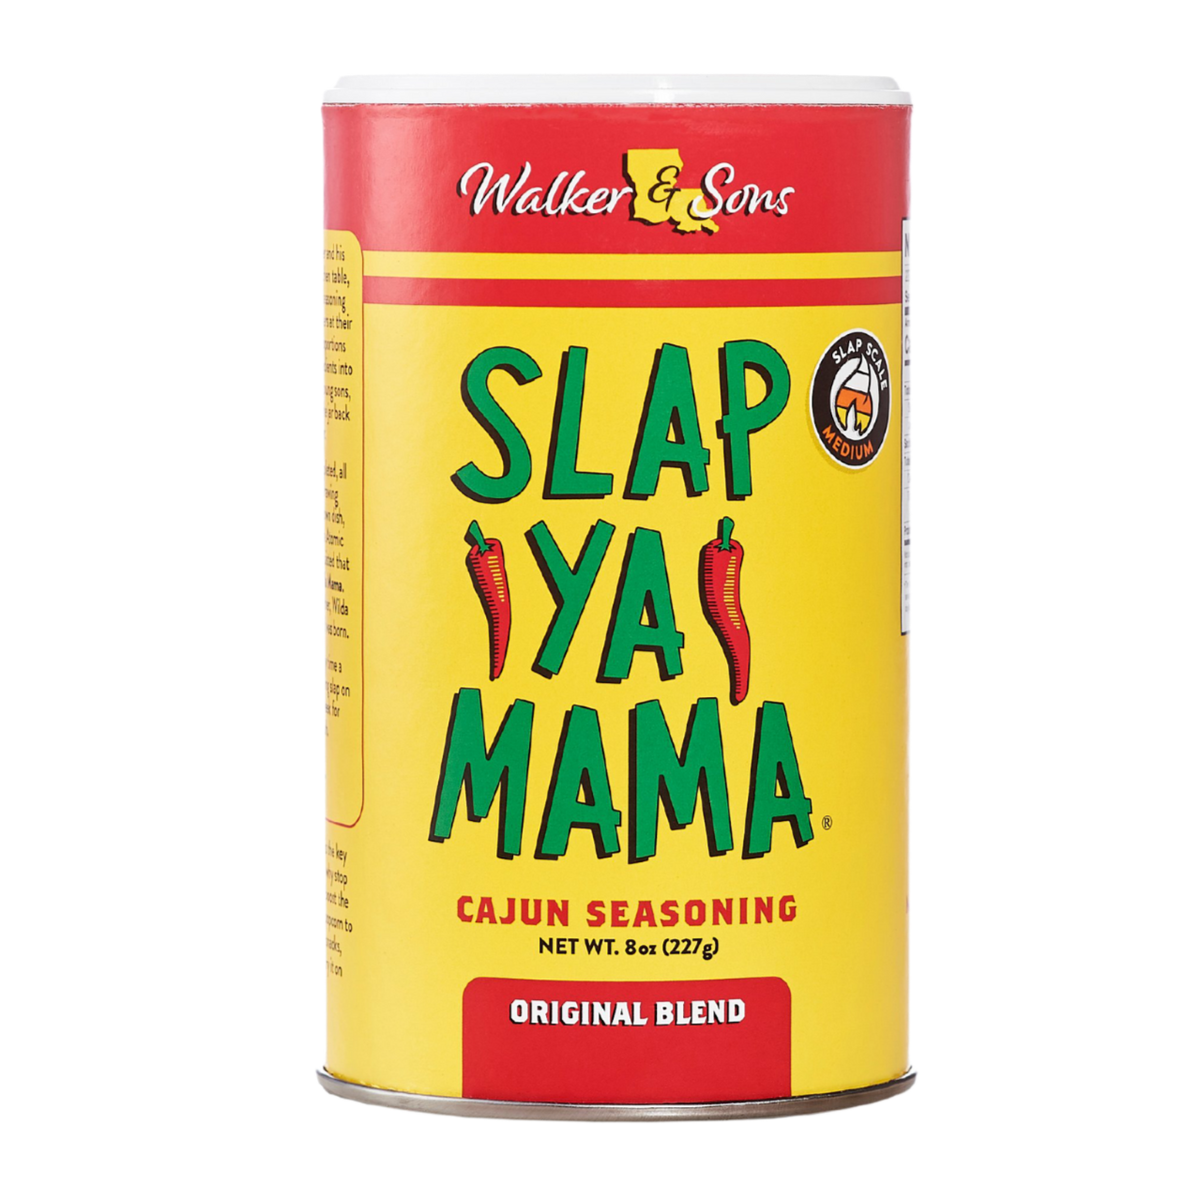 Slap Ya Mama Hot Blend Cajun Seasonimg, 8 oz - Harris Teeter